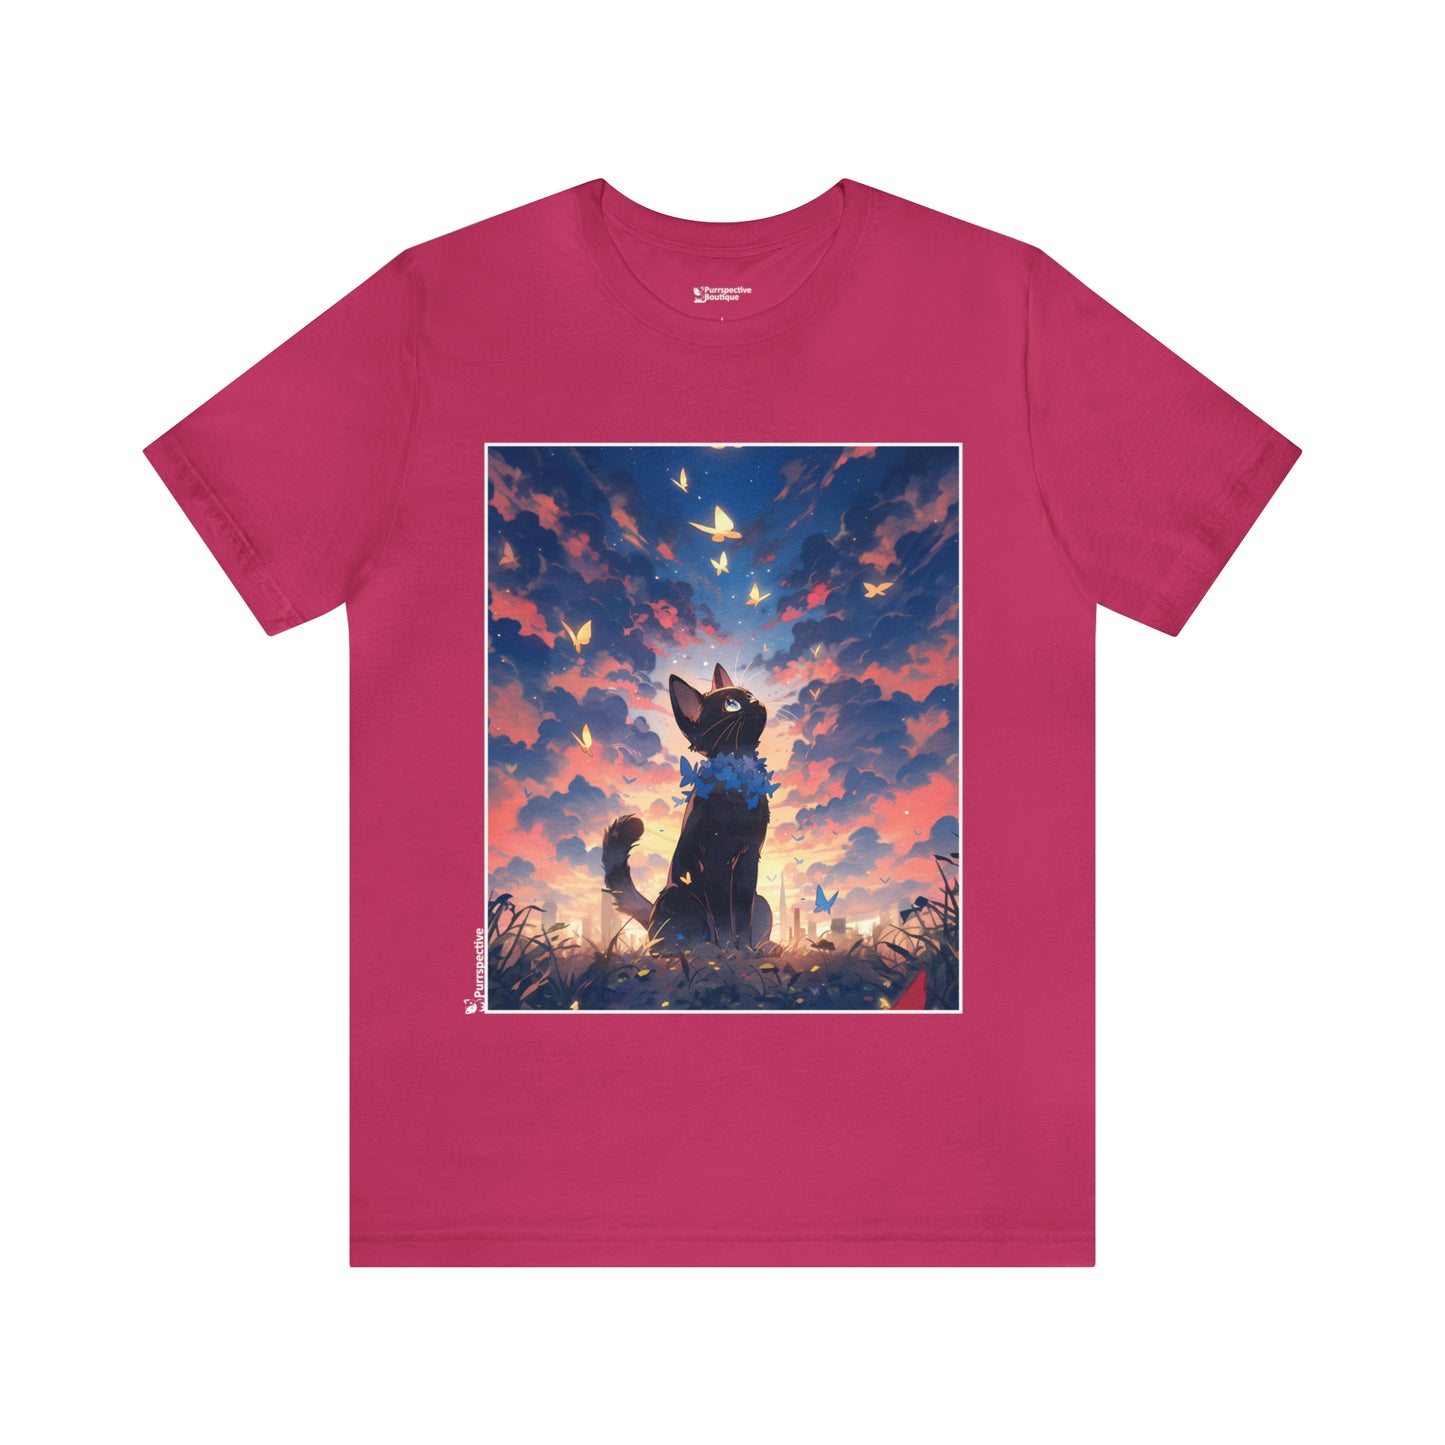 Whimsical Twilight | Unisex T-shirt